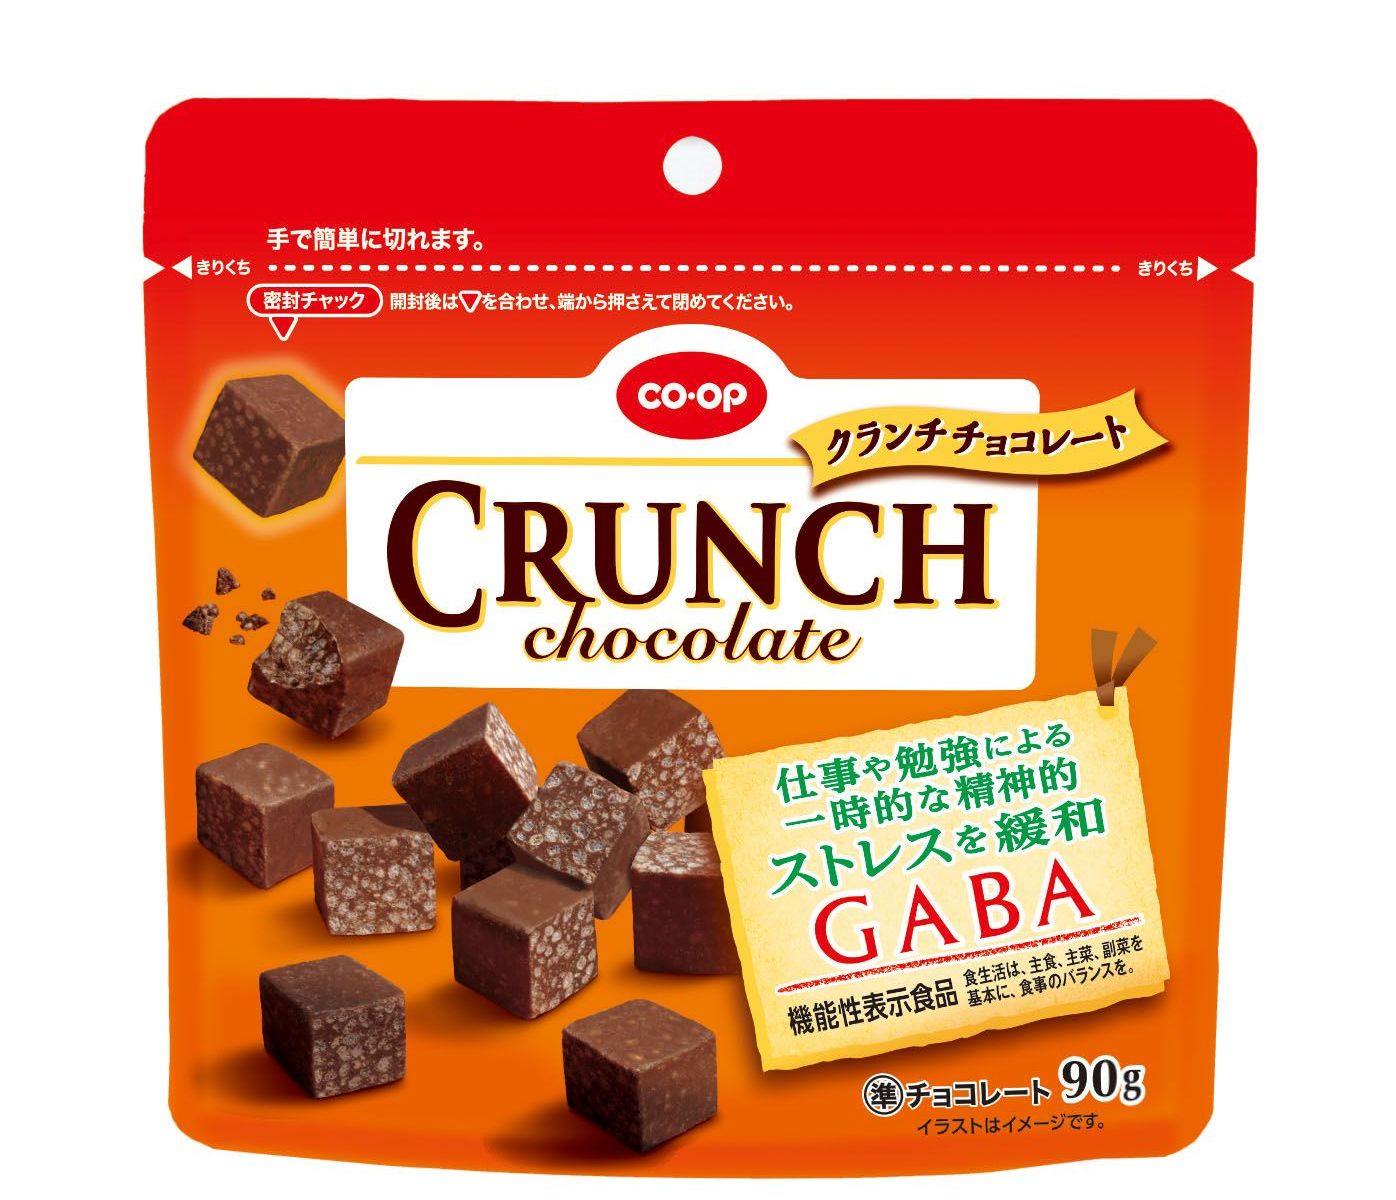 【10月1日発売】CO・OPクランチチョコレートGABA